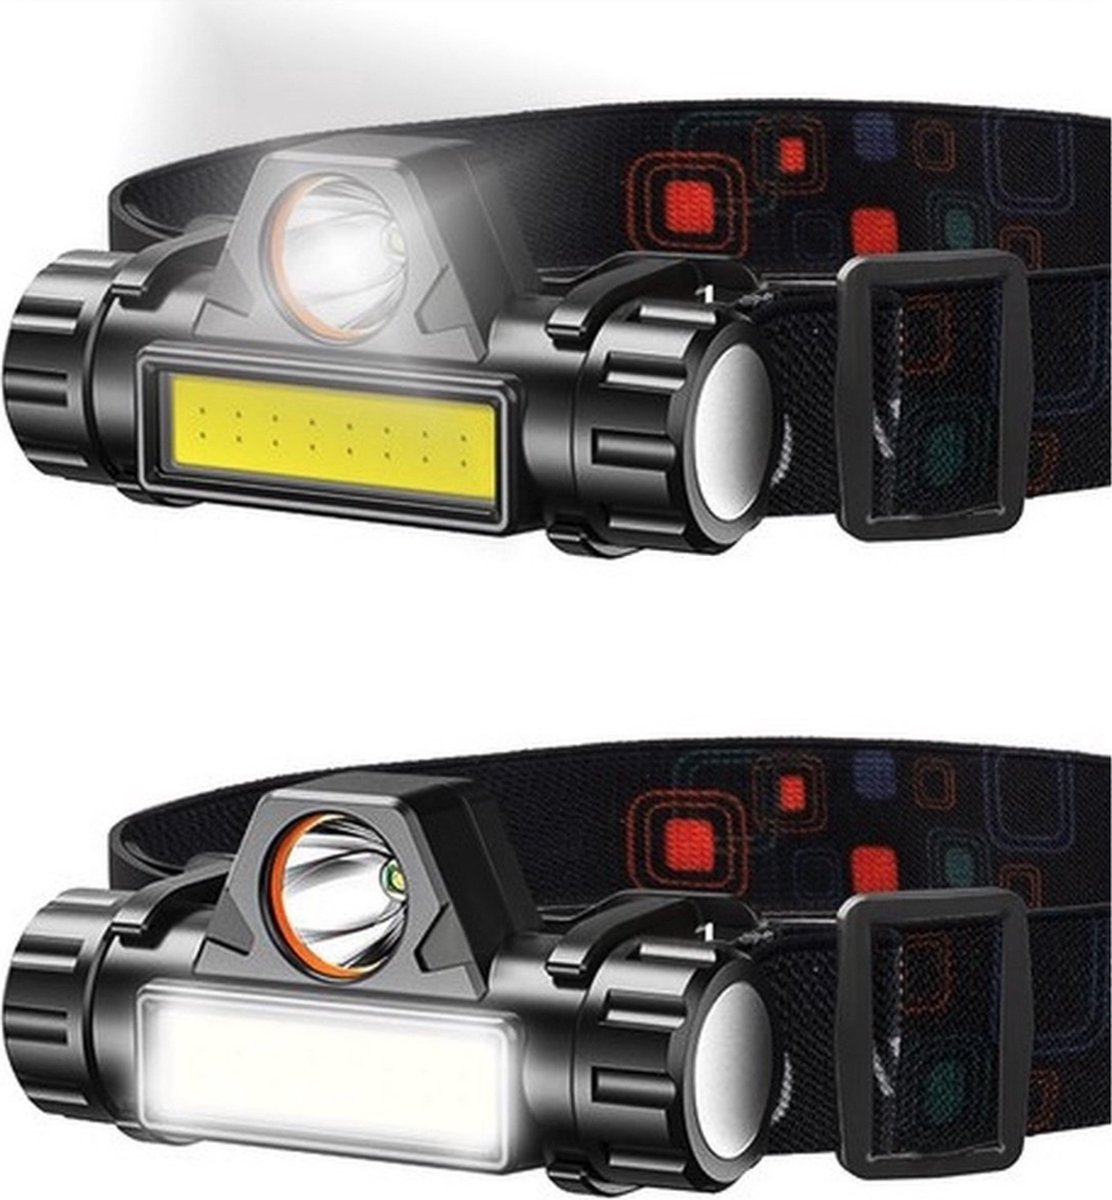 LED Hoofdlamp | USB Oplaadbaar | Waterdicht | 2 lichtstanden | Kantelbaar - IsoTrade